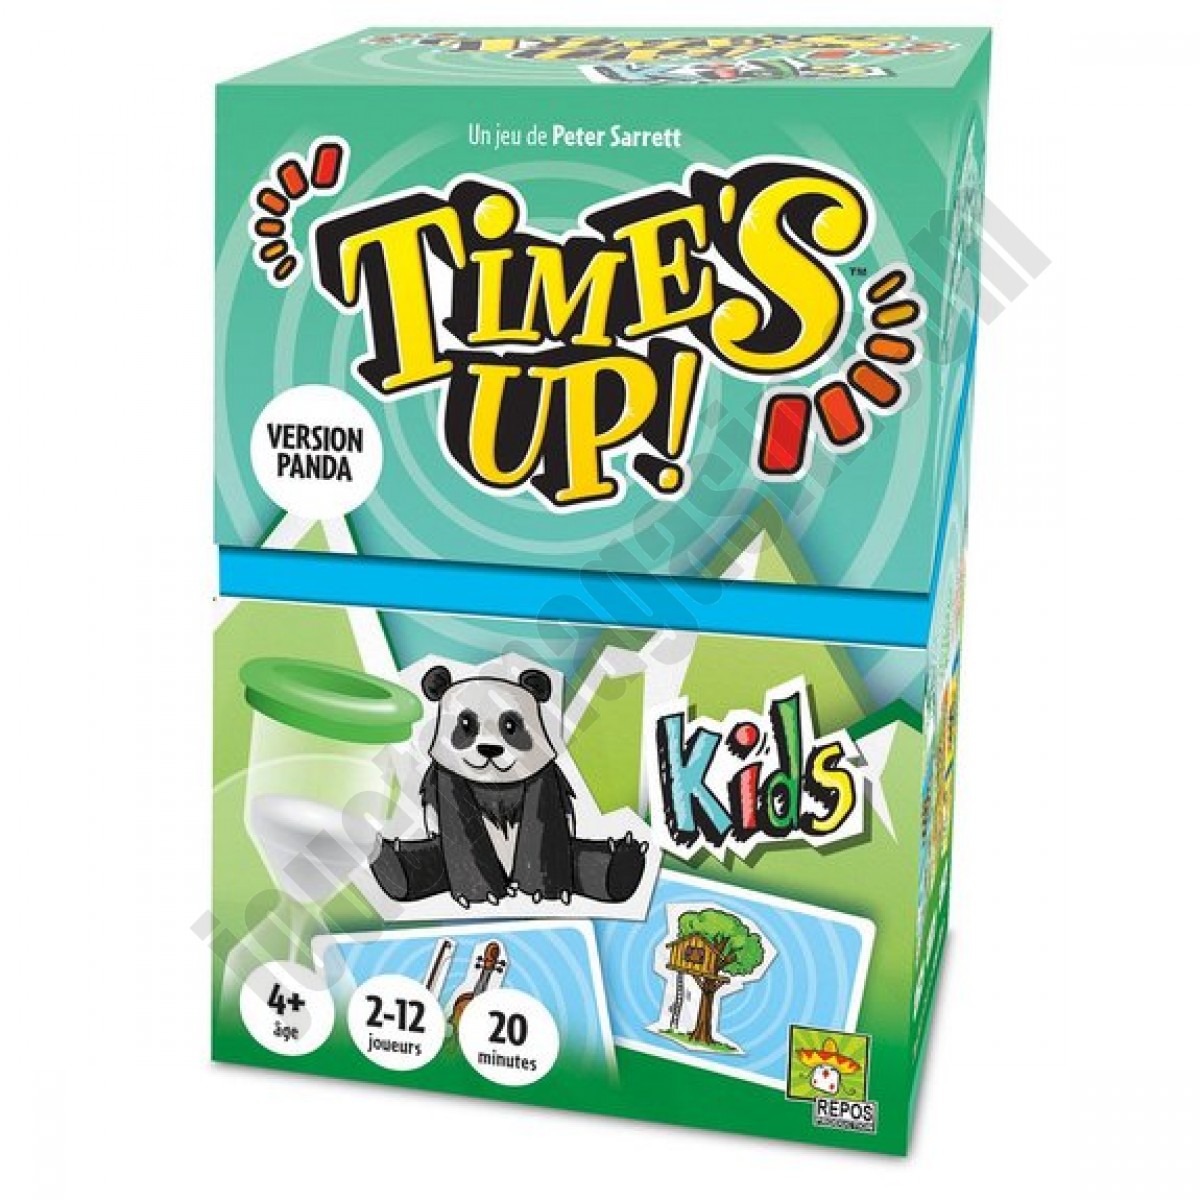 Time's Up Kids Panda ◆◆◆ Nouveau - Time's Up Kids Panda ◆◆◆ Nouveau